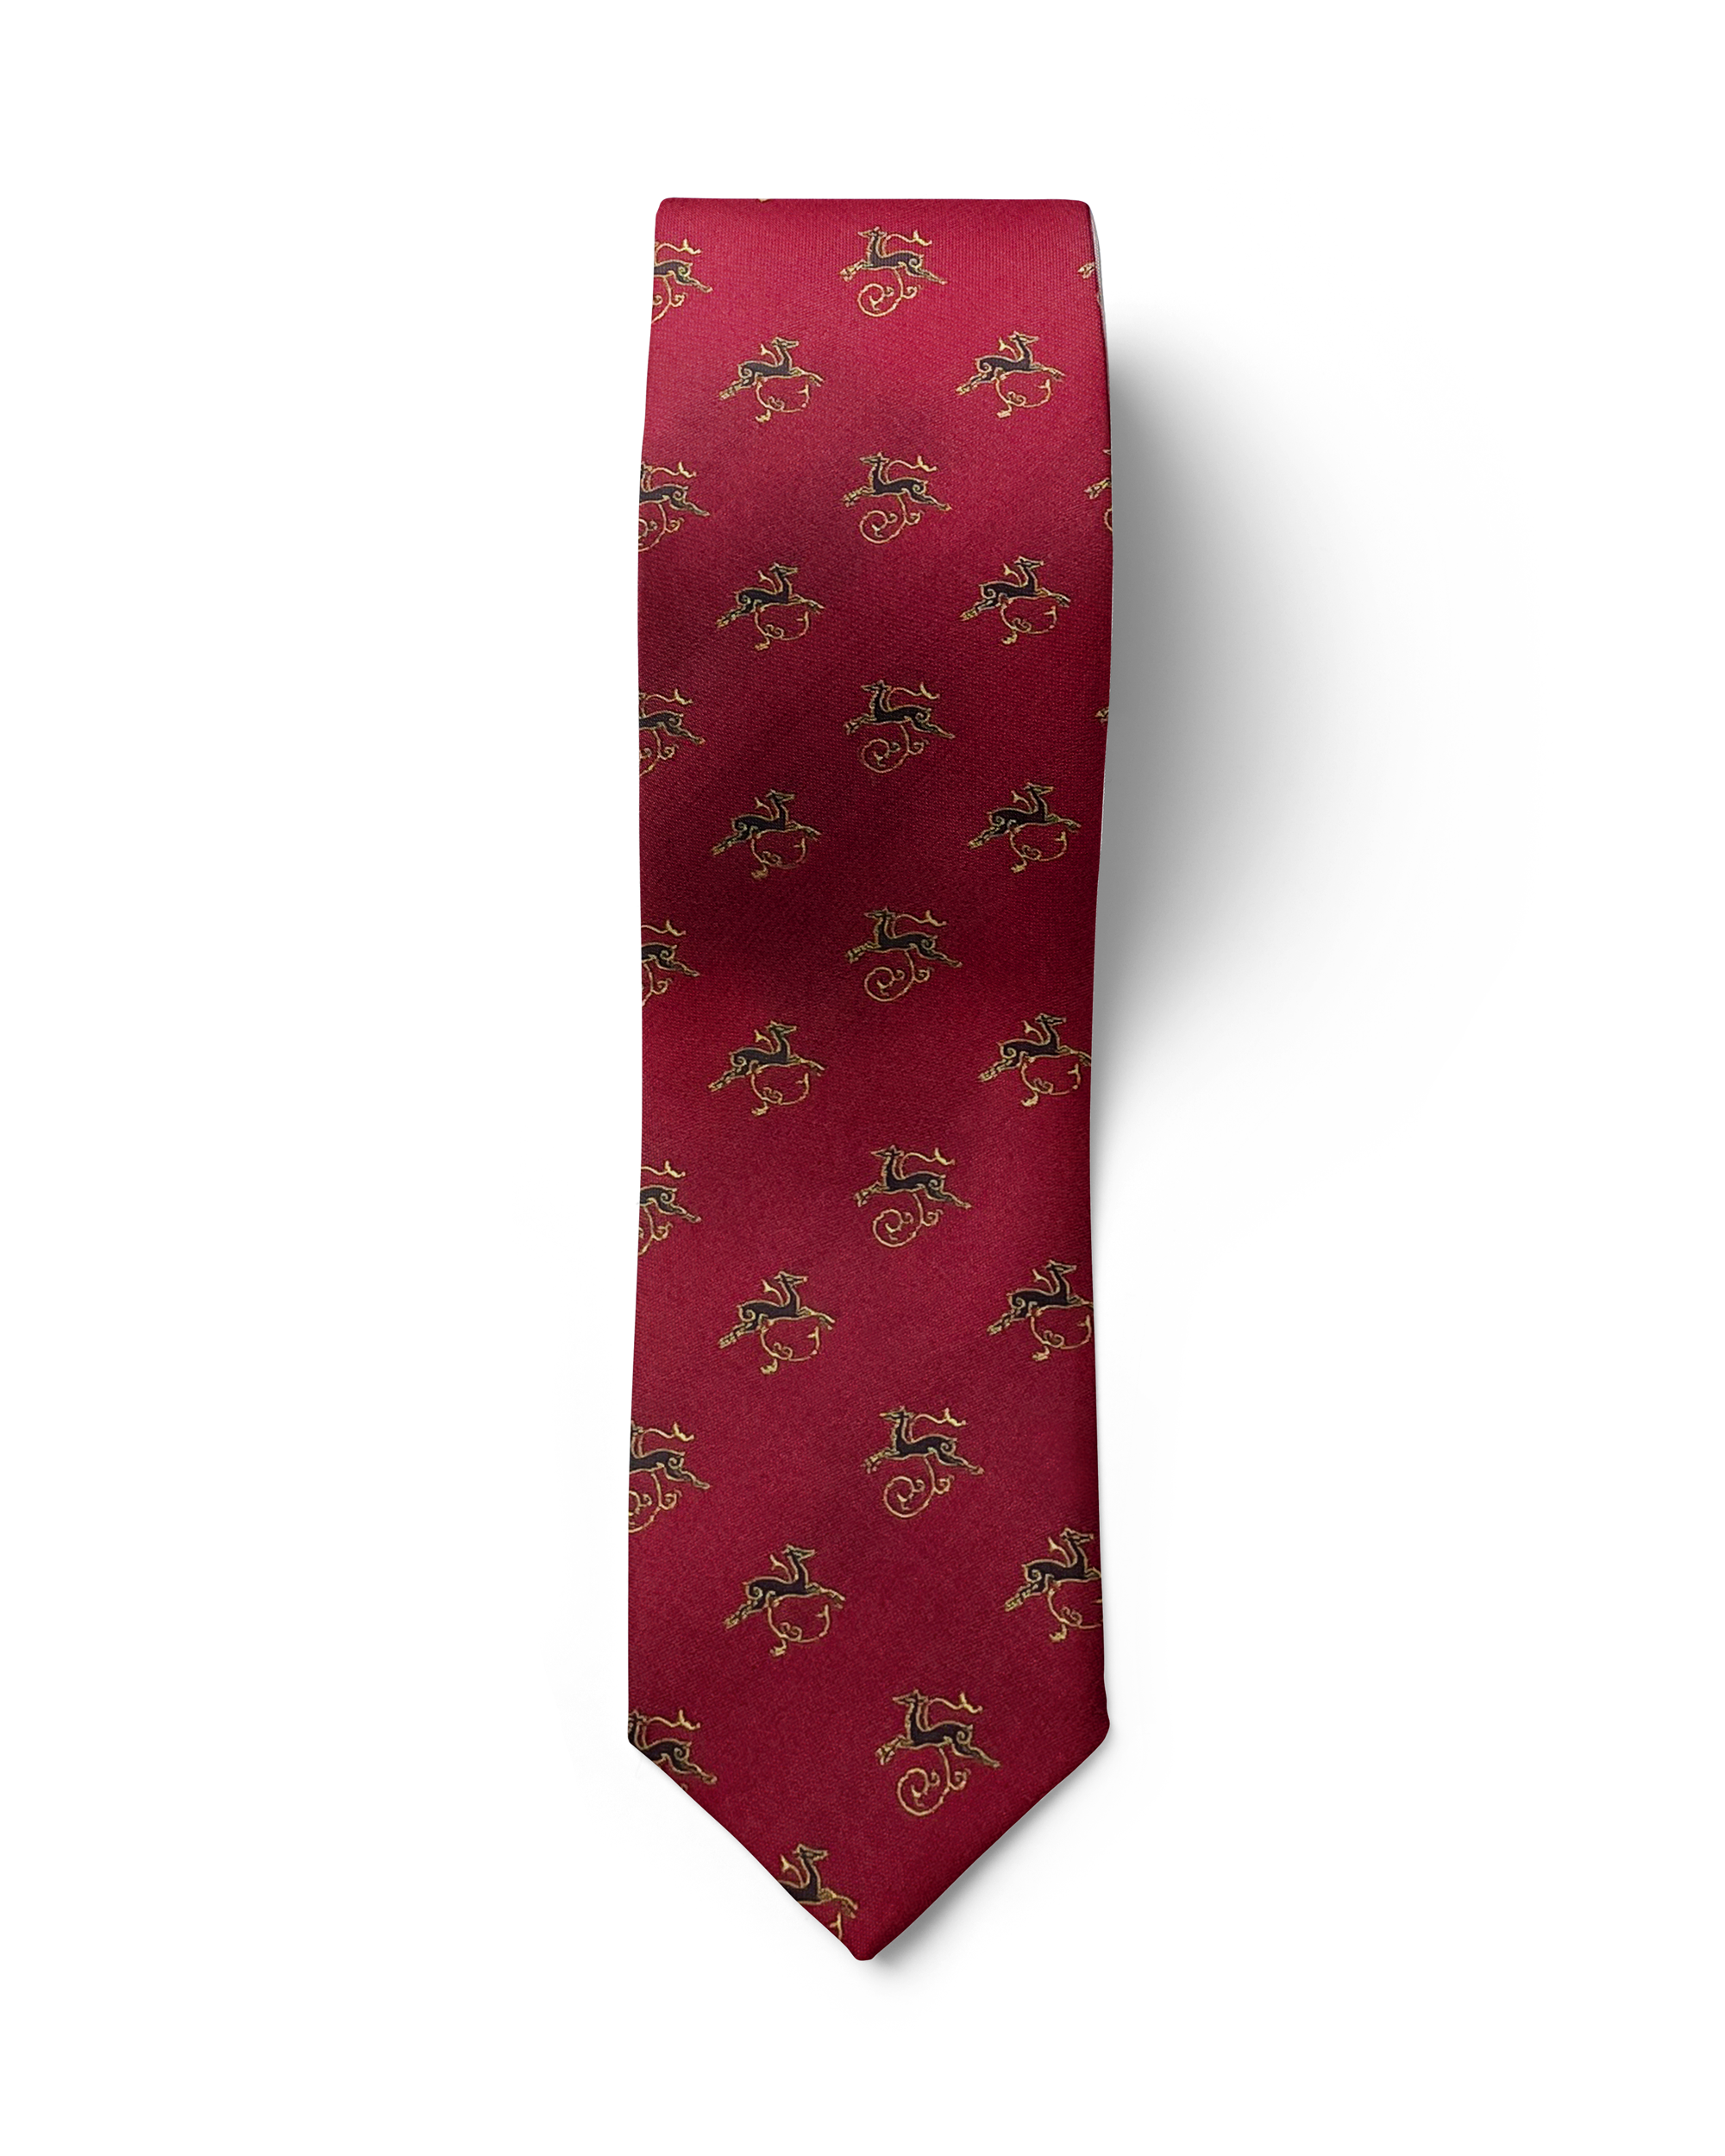 ჟაკარდის აბრეშუმის ჰალსტუხი „ირმის ნახტომი“ (წითელი)